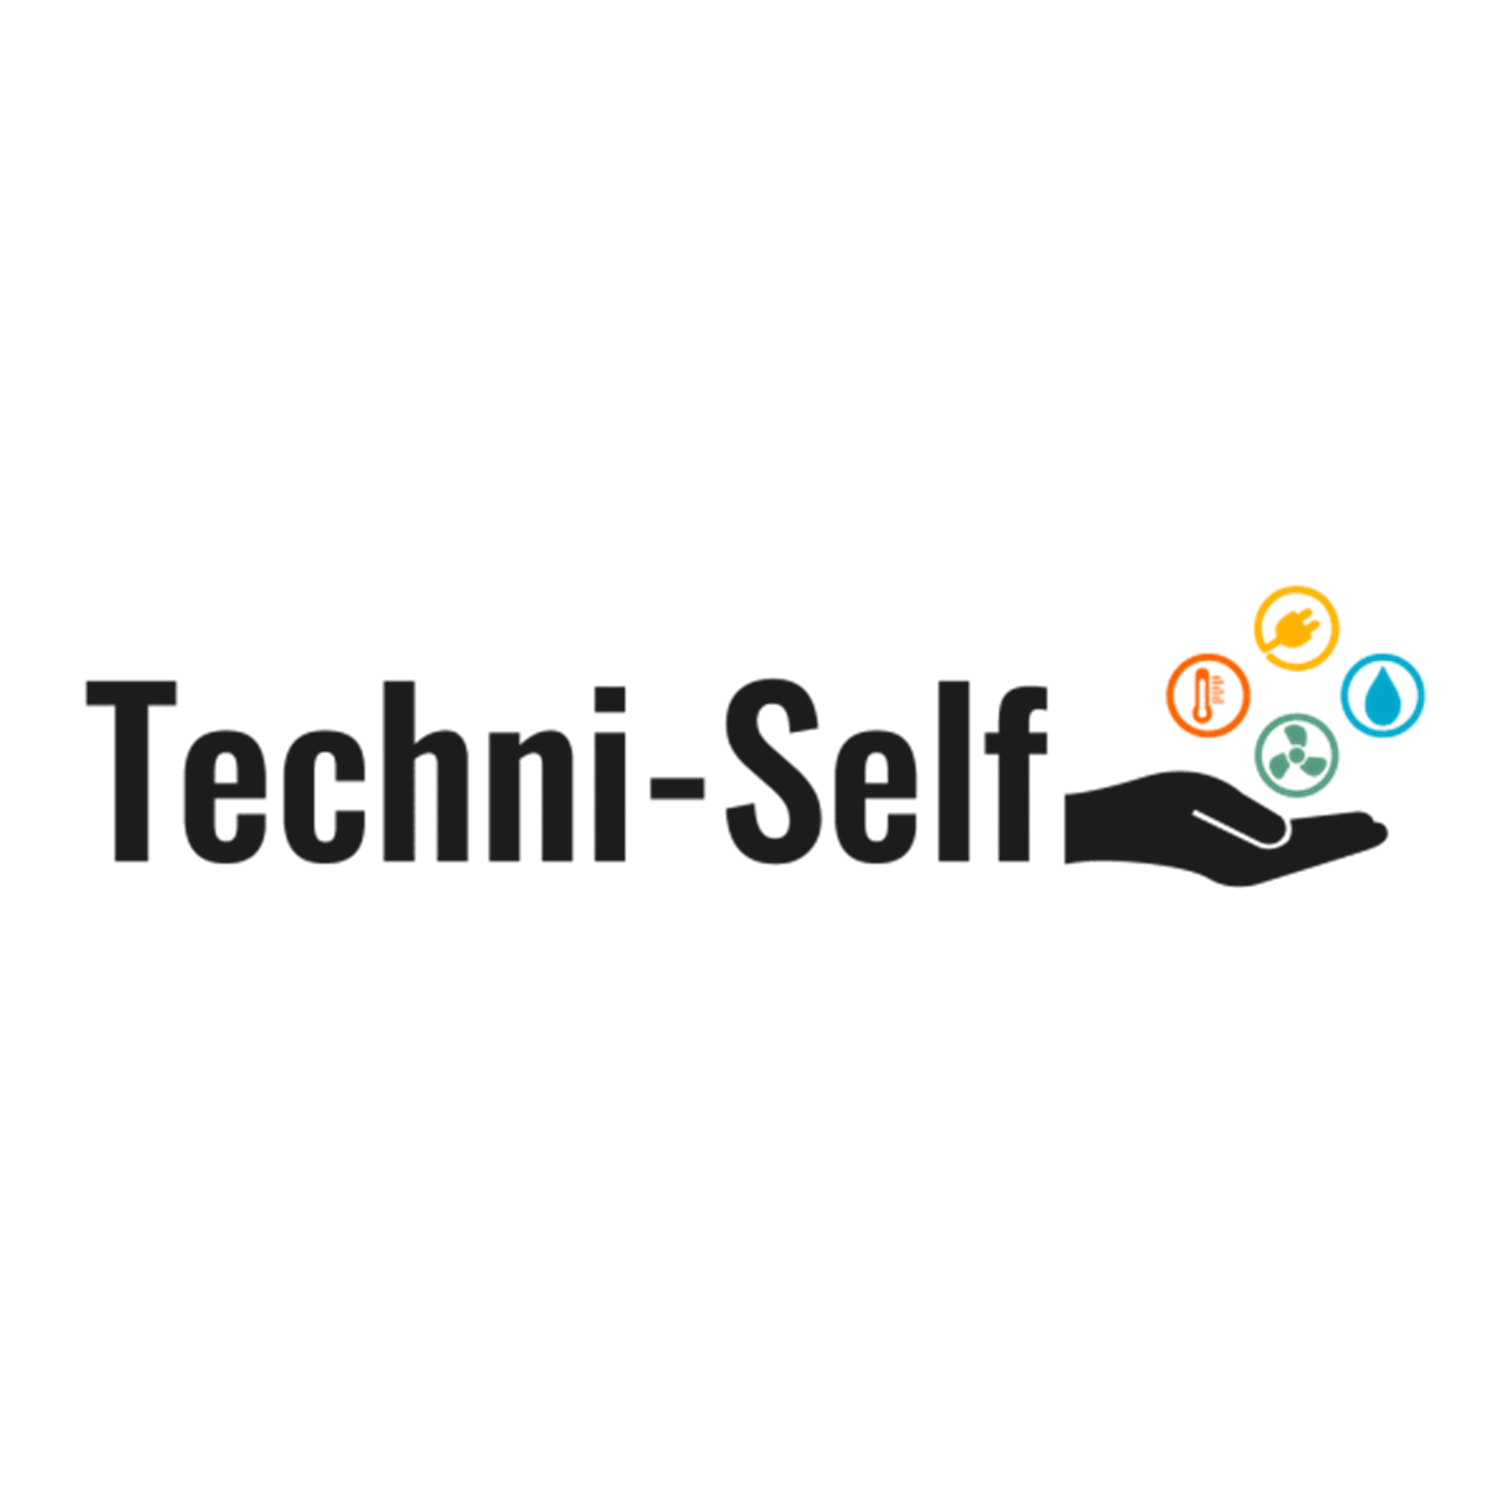 Techni-Self